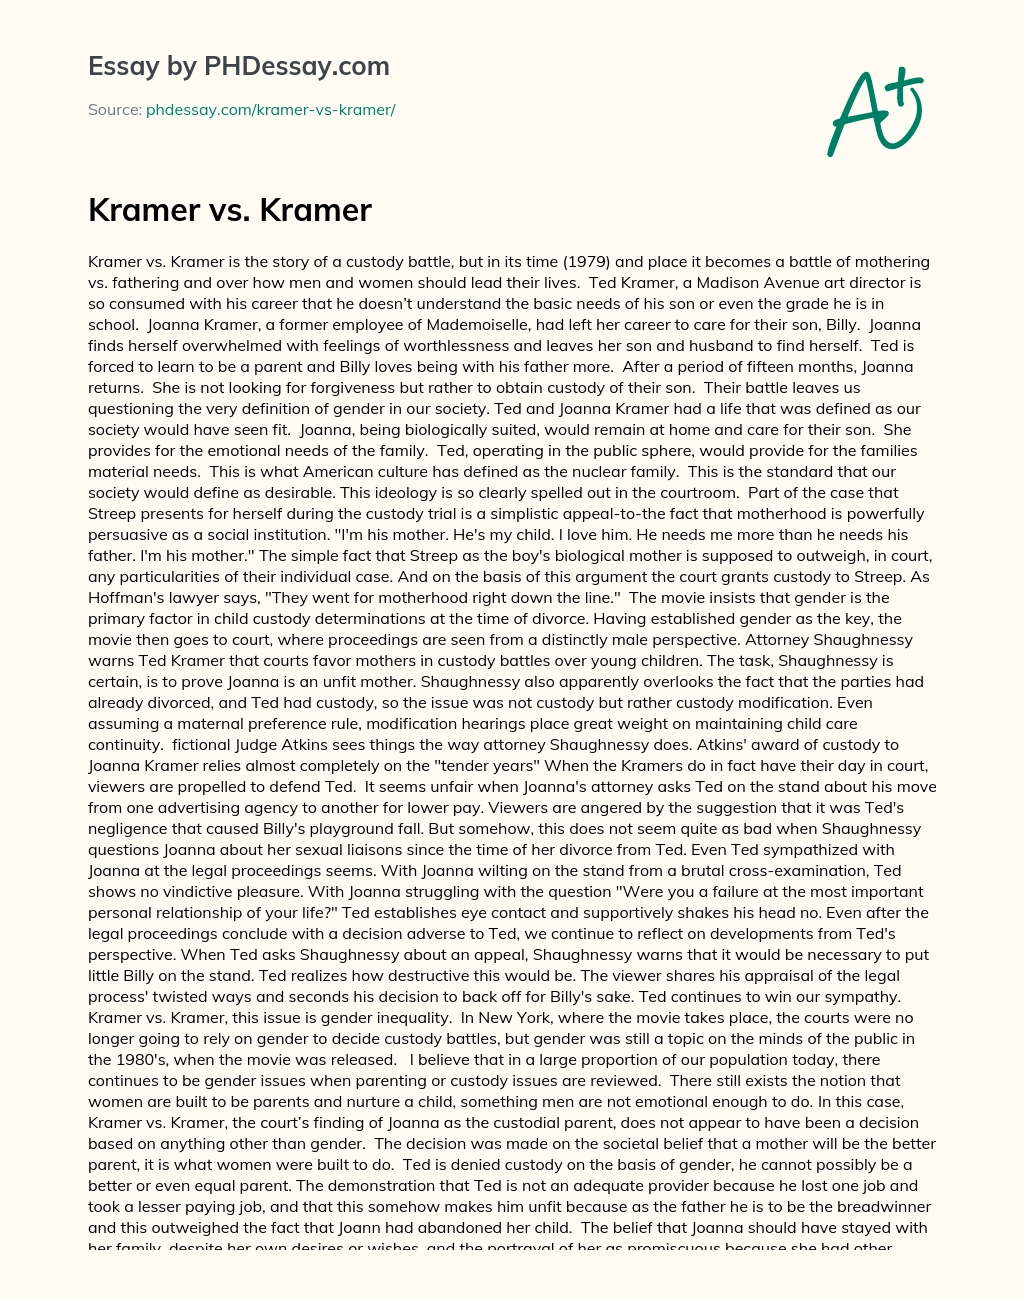 Kramer vs. Kramer essay